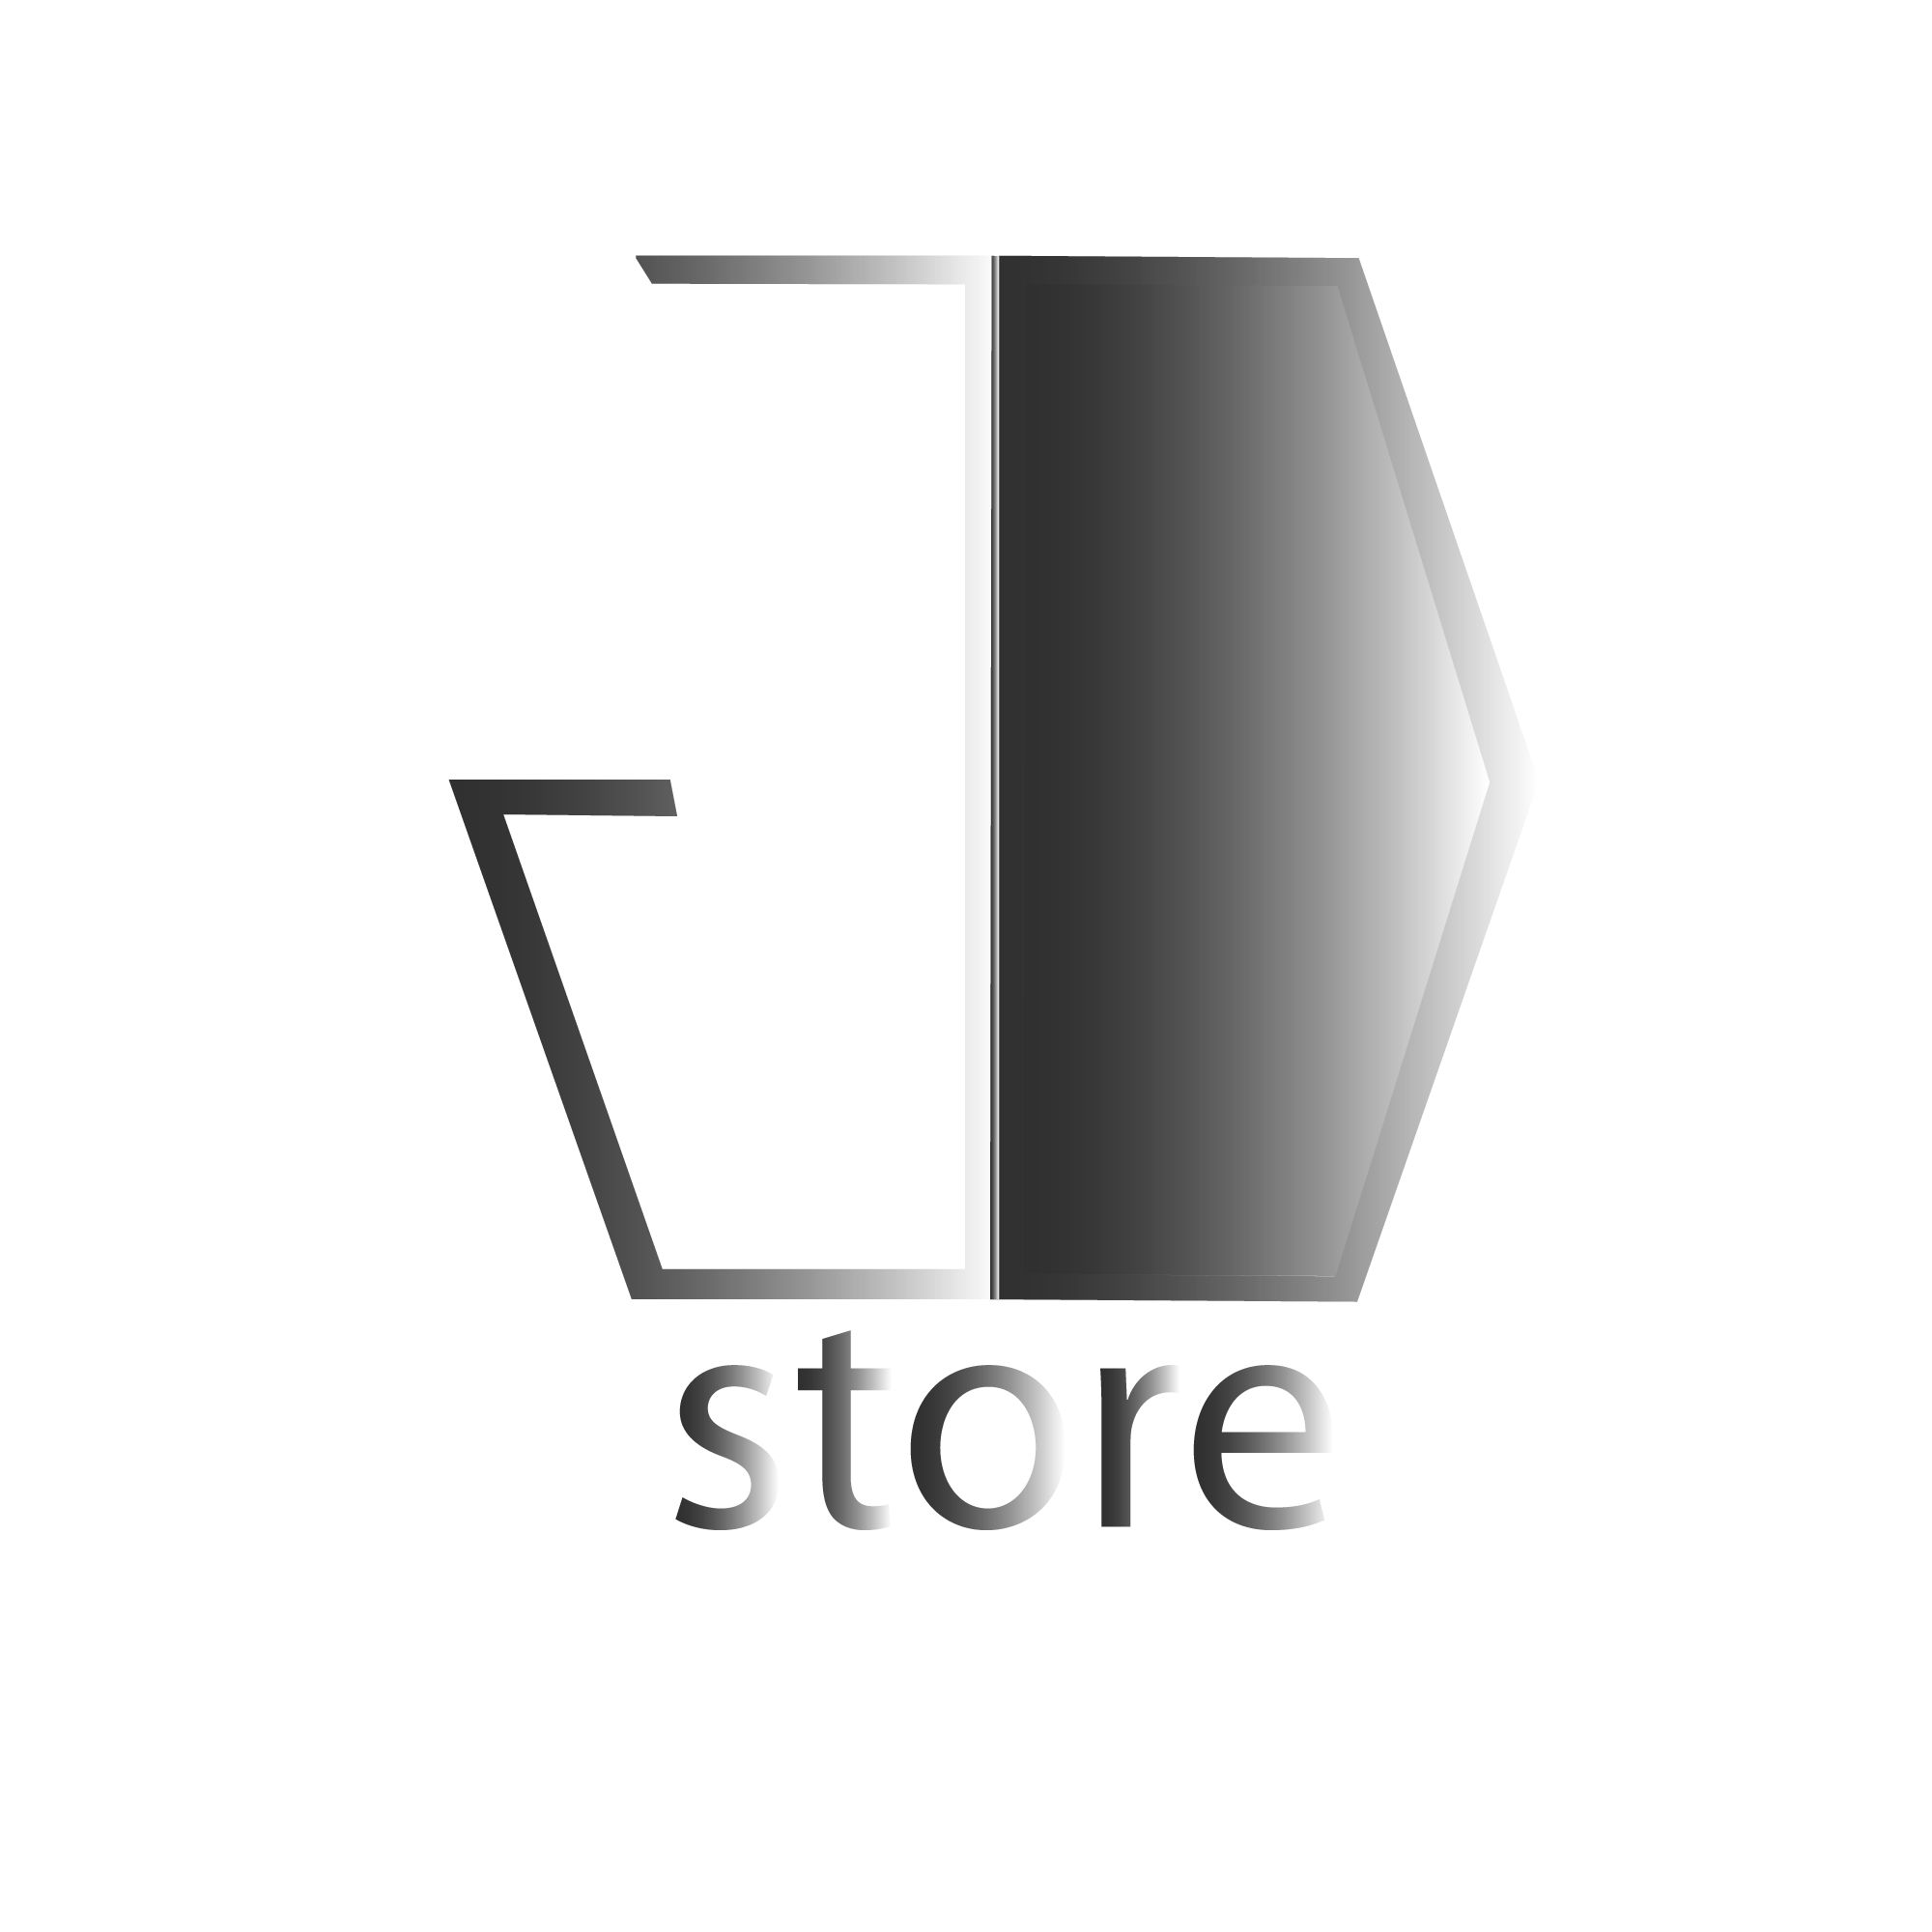 Логотип для  магазина-ателье  - дизайнер DenUa